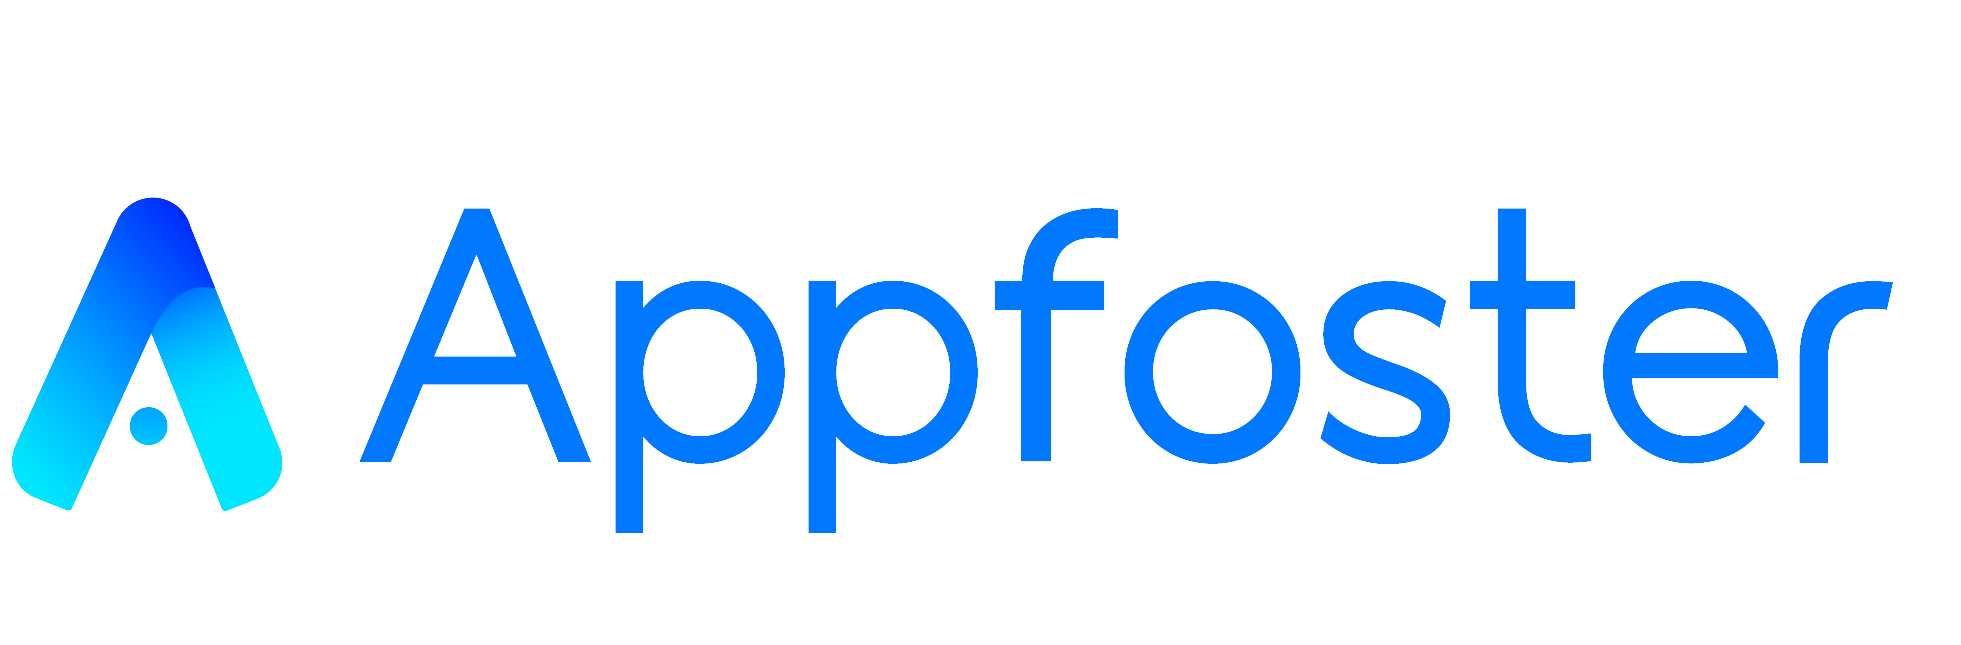 Appfoster Logo